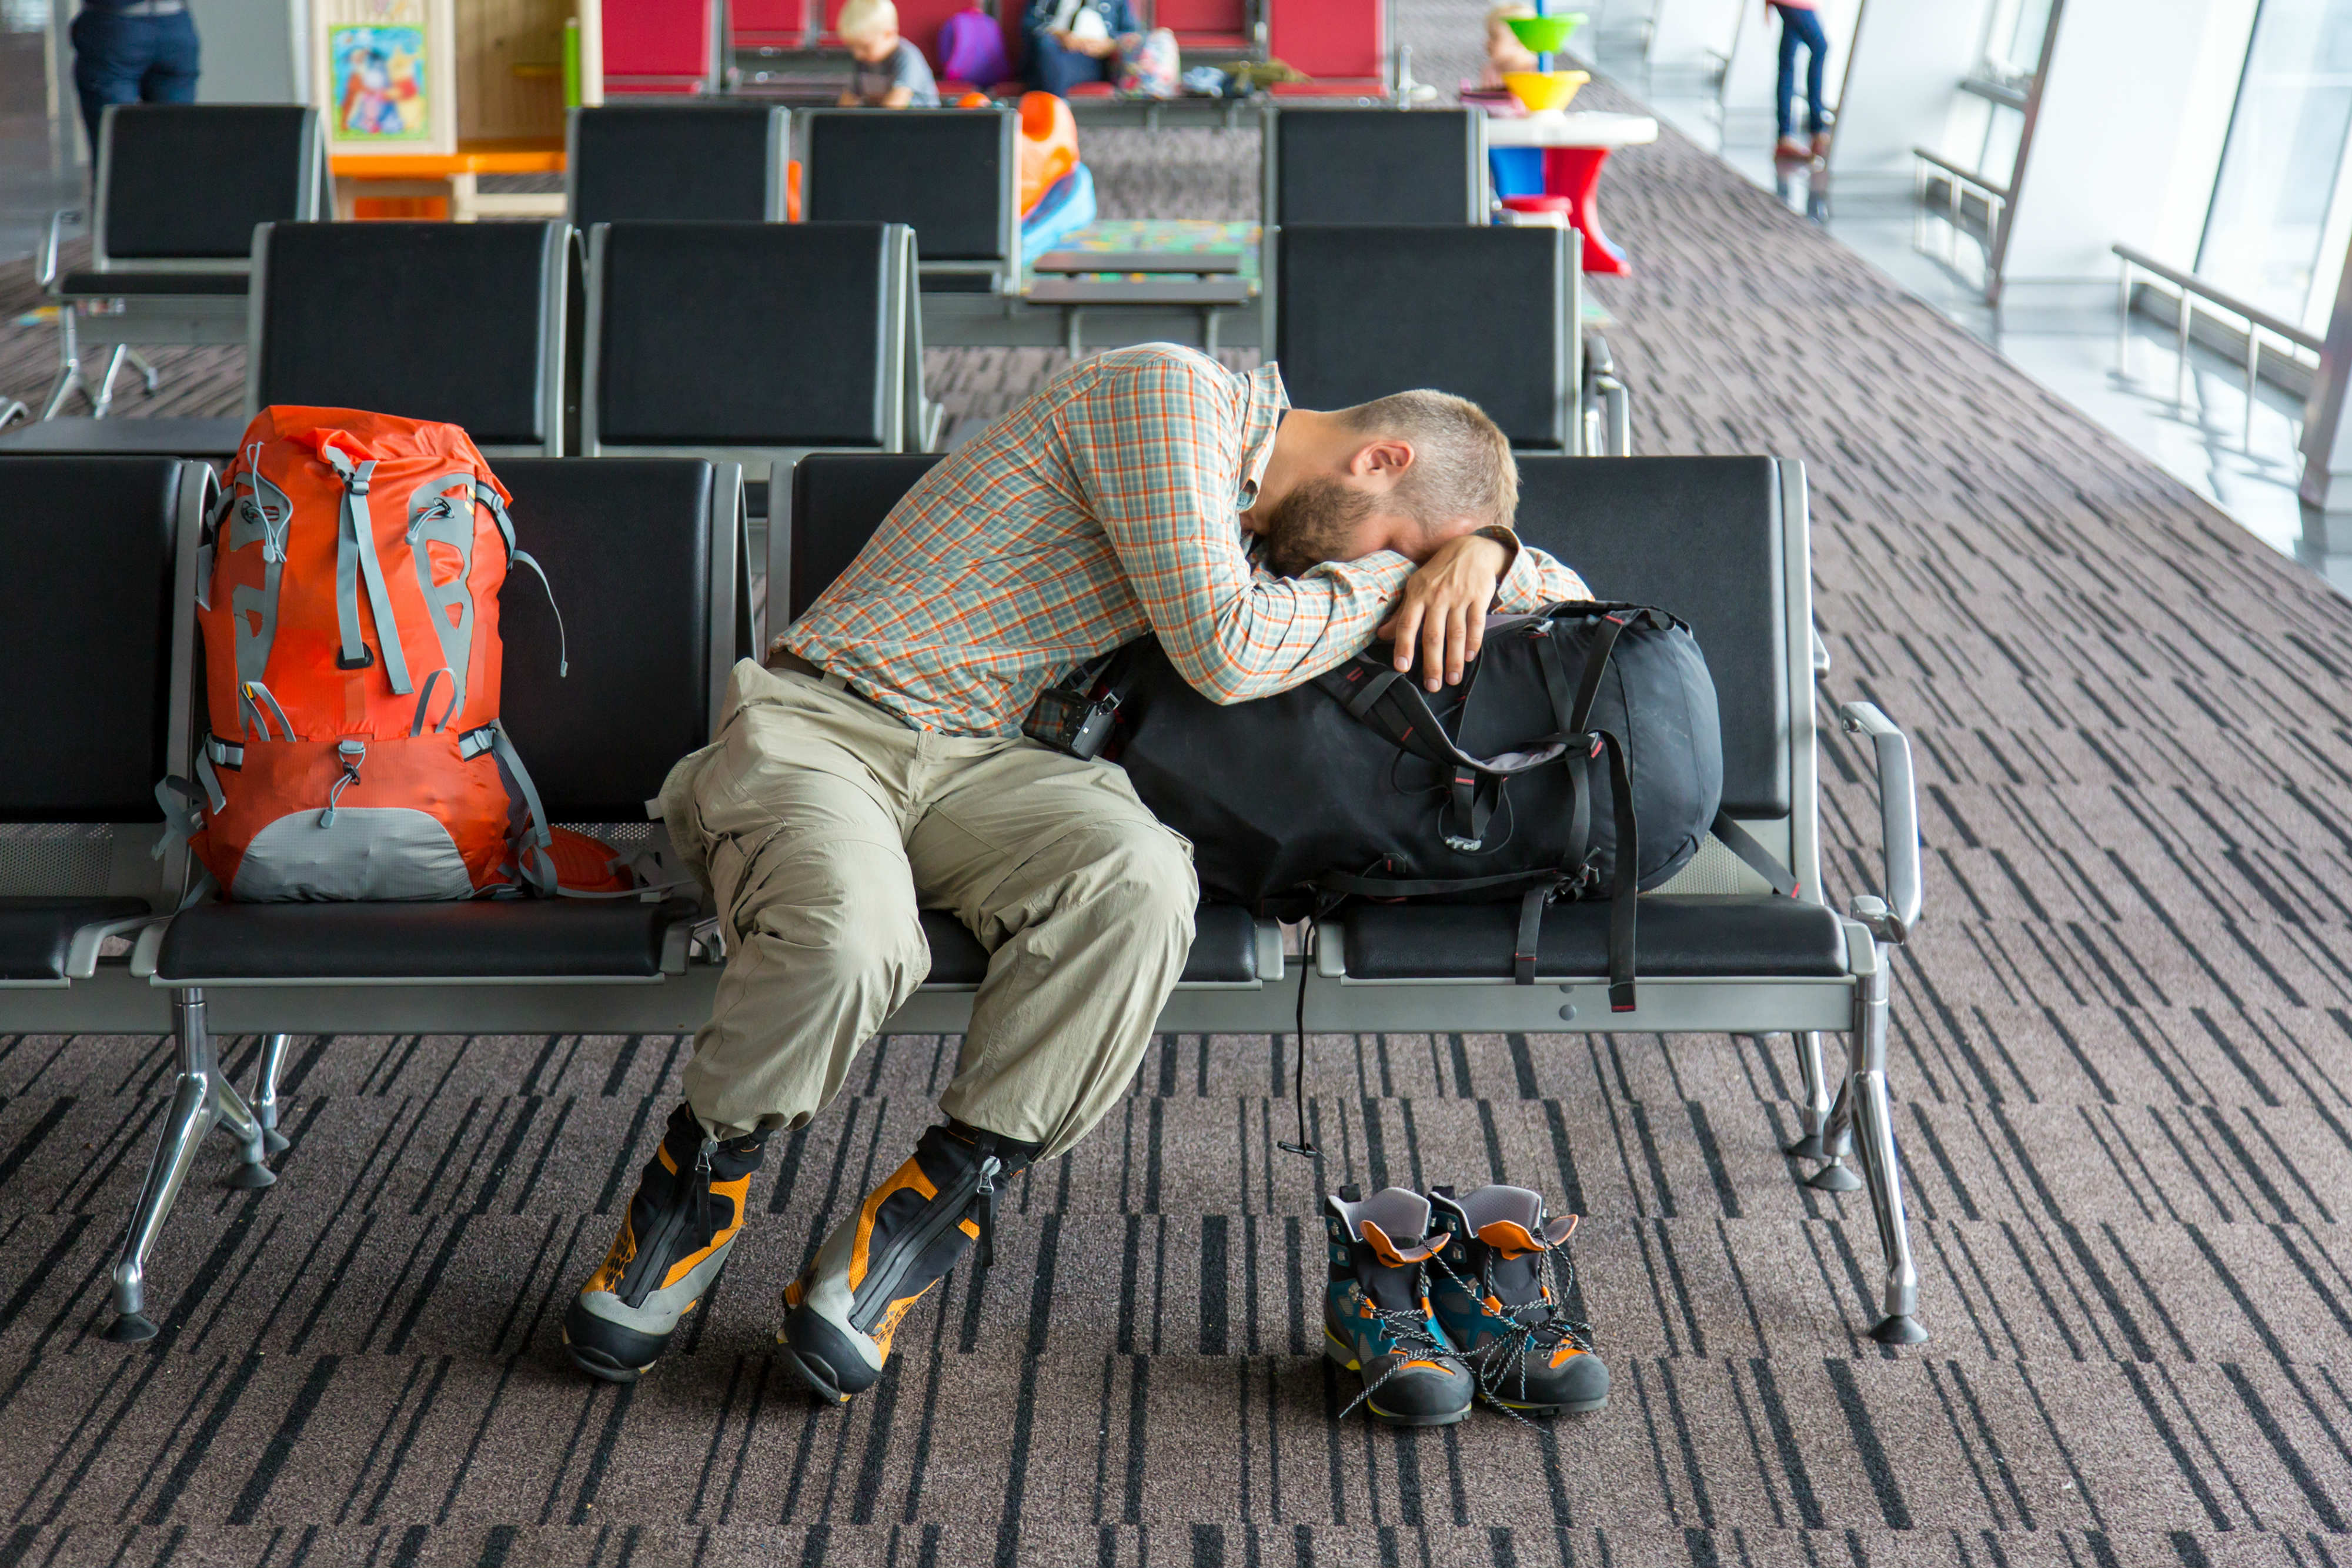 Уставшие туристы. Ожидание в аэропорту. Люди в аэропорту ждут. Люди в зале ожидания. Человек спящий в аэропорту.